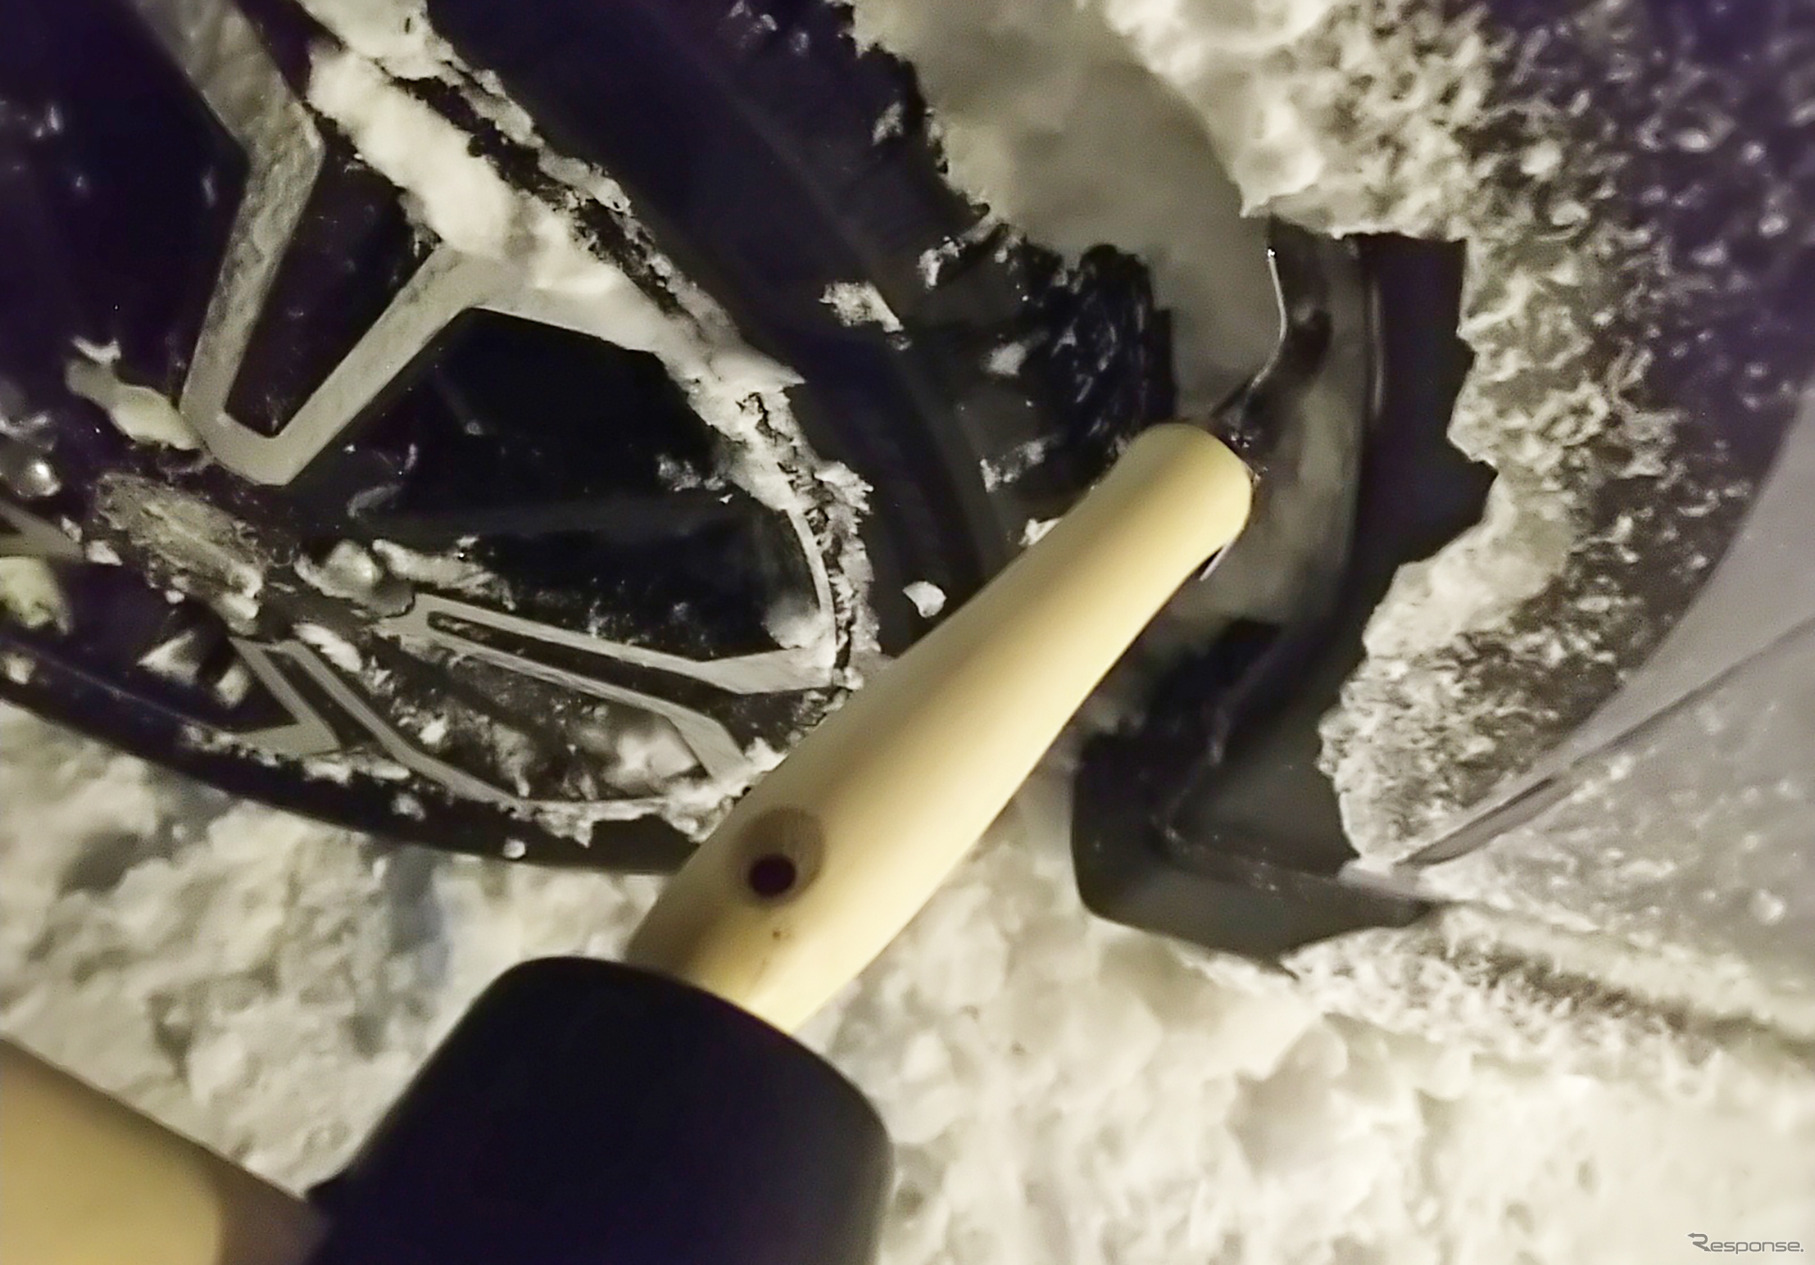 三菱 eKクロスEV 冬季1200km試乗前編：着氷を放置していると前輪の舵角を確保できなくなるので、適宜落とす必要がある。スコップの把手をゴムハンマーで叩いて氷を割るが効率が悪い。探せばおそらくげんのうのような、もっと便利な道具があると思う。